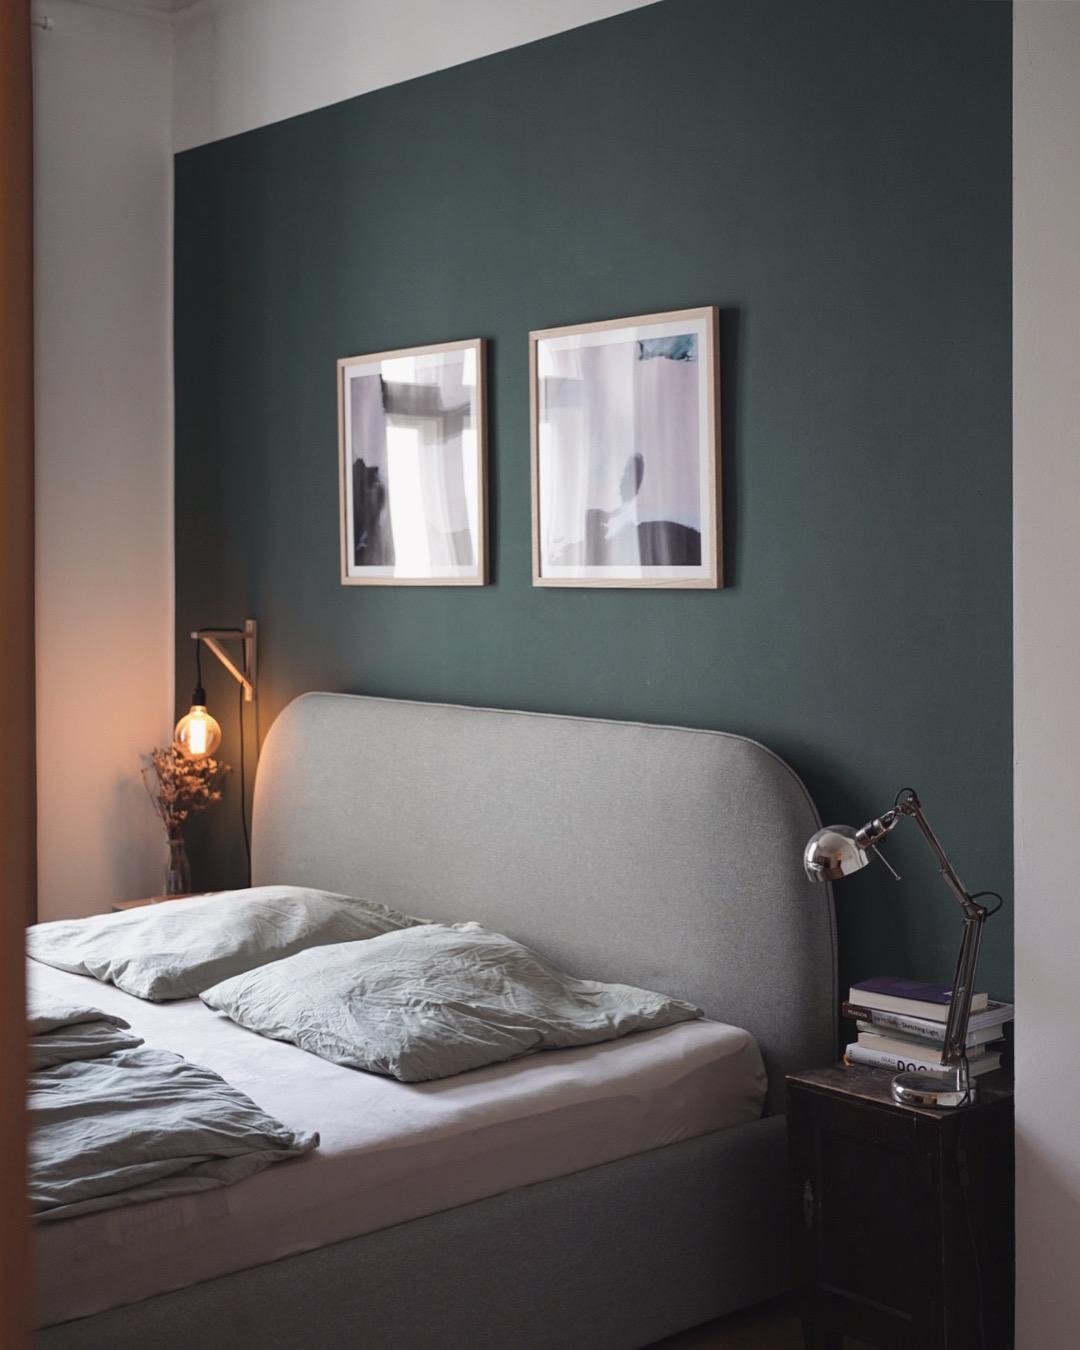 Cozy Jahreszeit
#bedroom #schlafzimmer #scandihome #interior #posterart 